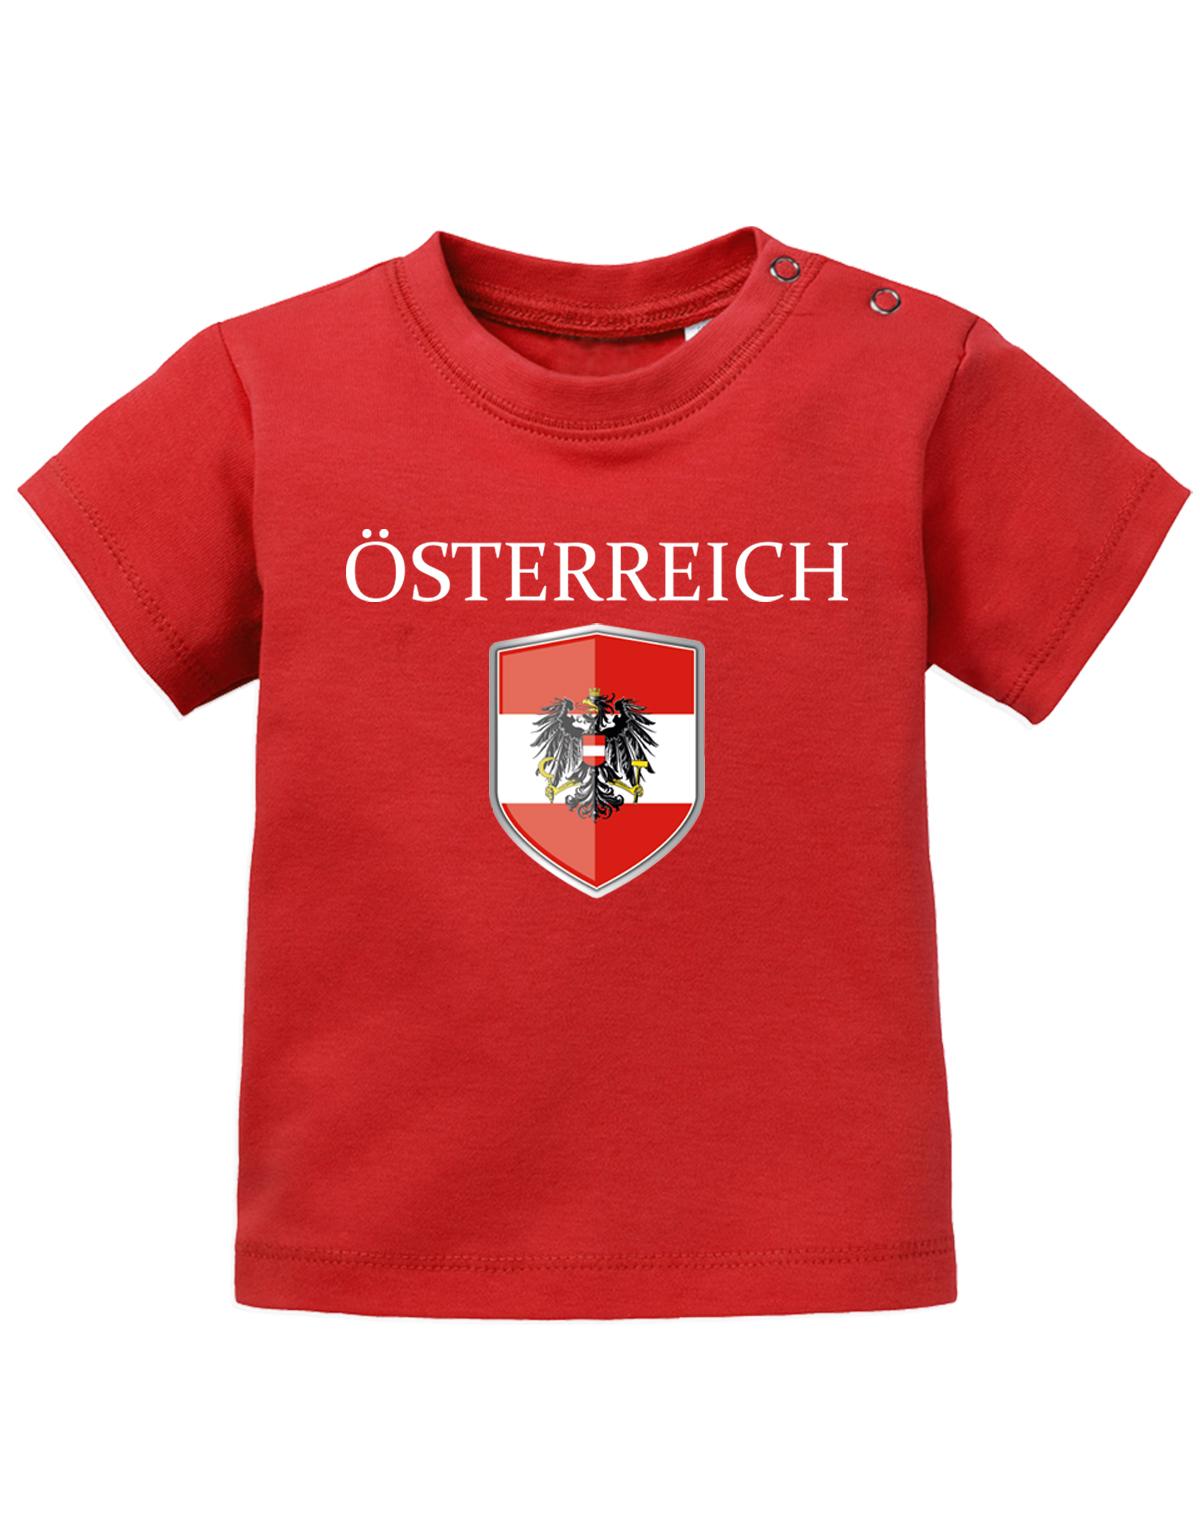 Österreich T Shirt für Junge und Mädchen. Österreich Wappen mit Österreich als Schriftzug. Rot